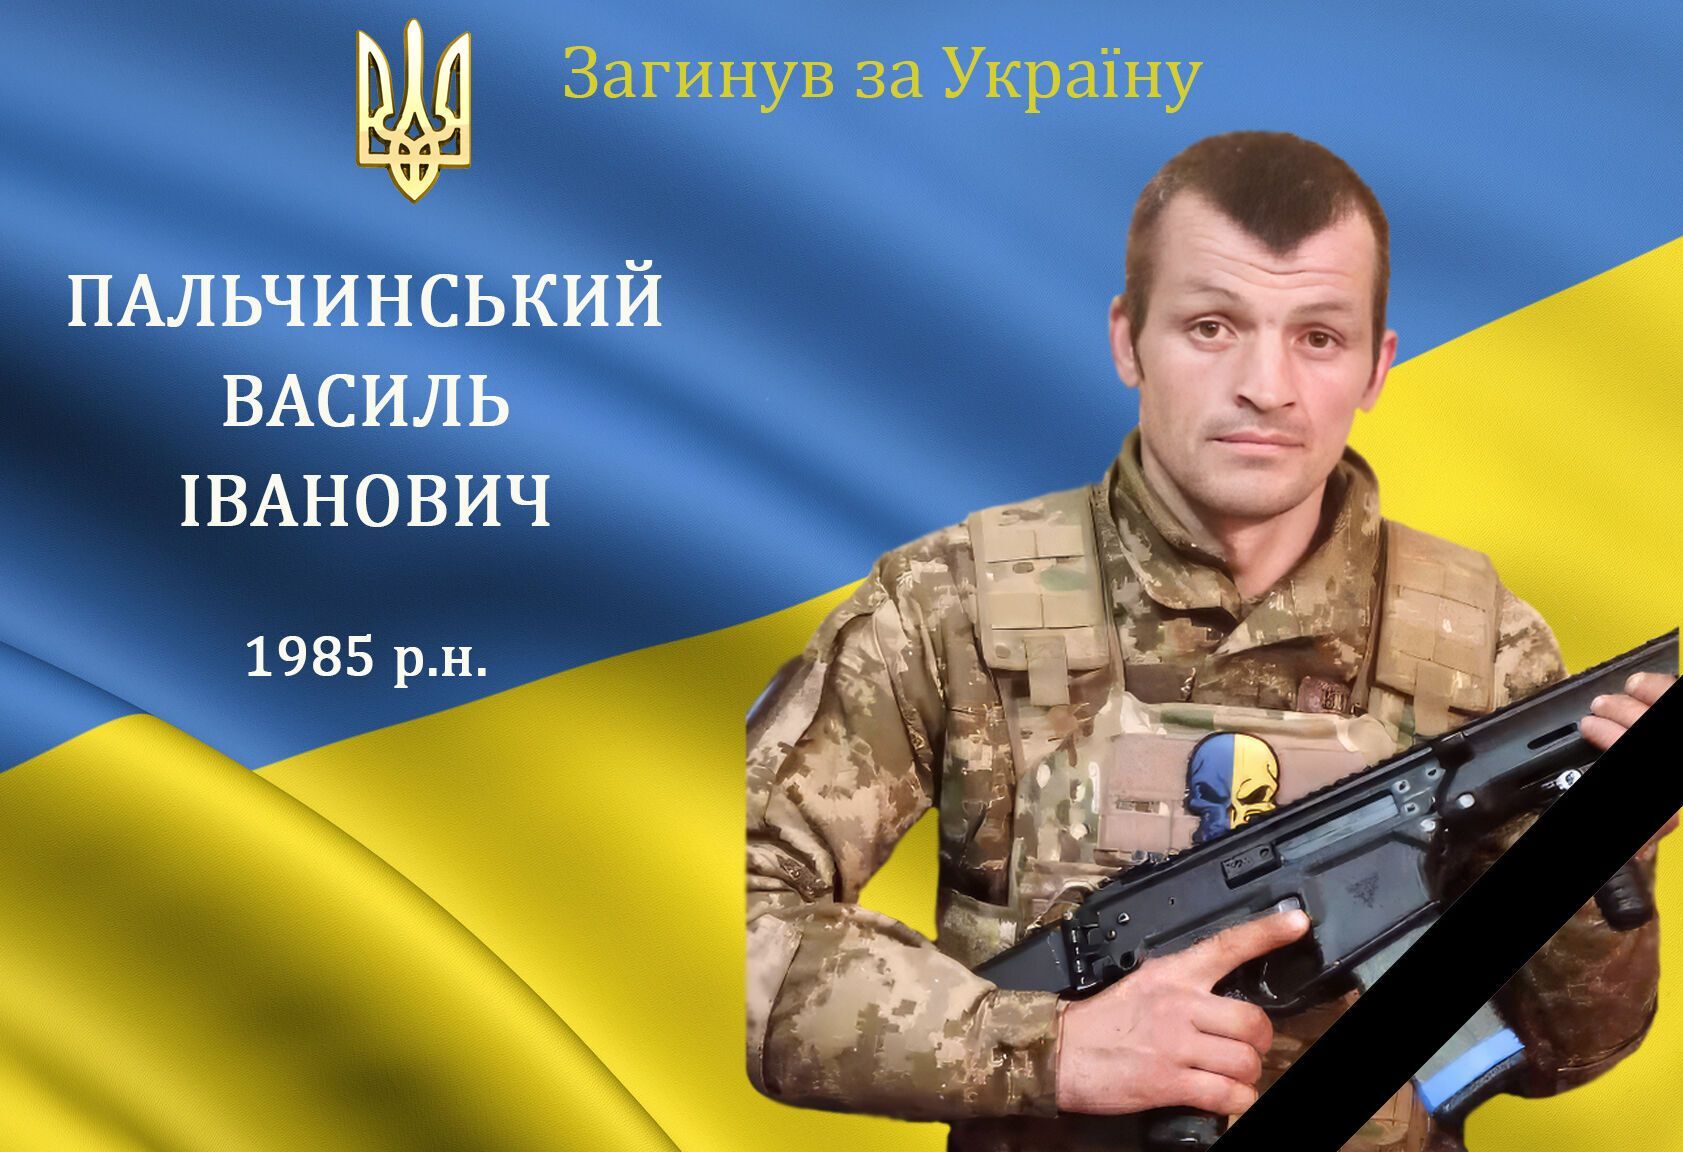 "До последнего вздоха защищал Украину": в боях с оккупантами погиб воин из Винницкой области